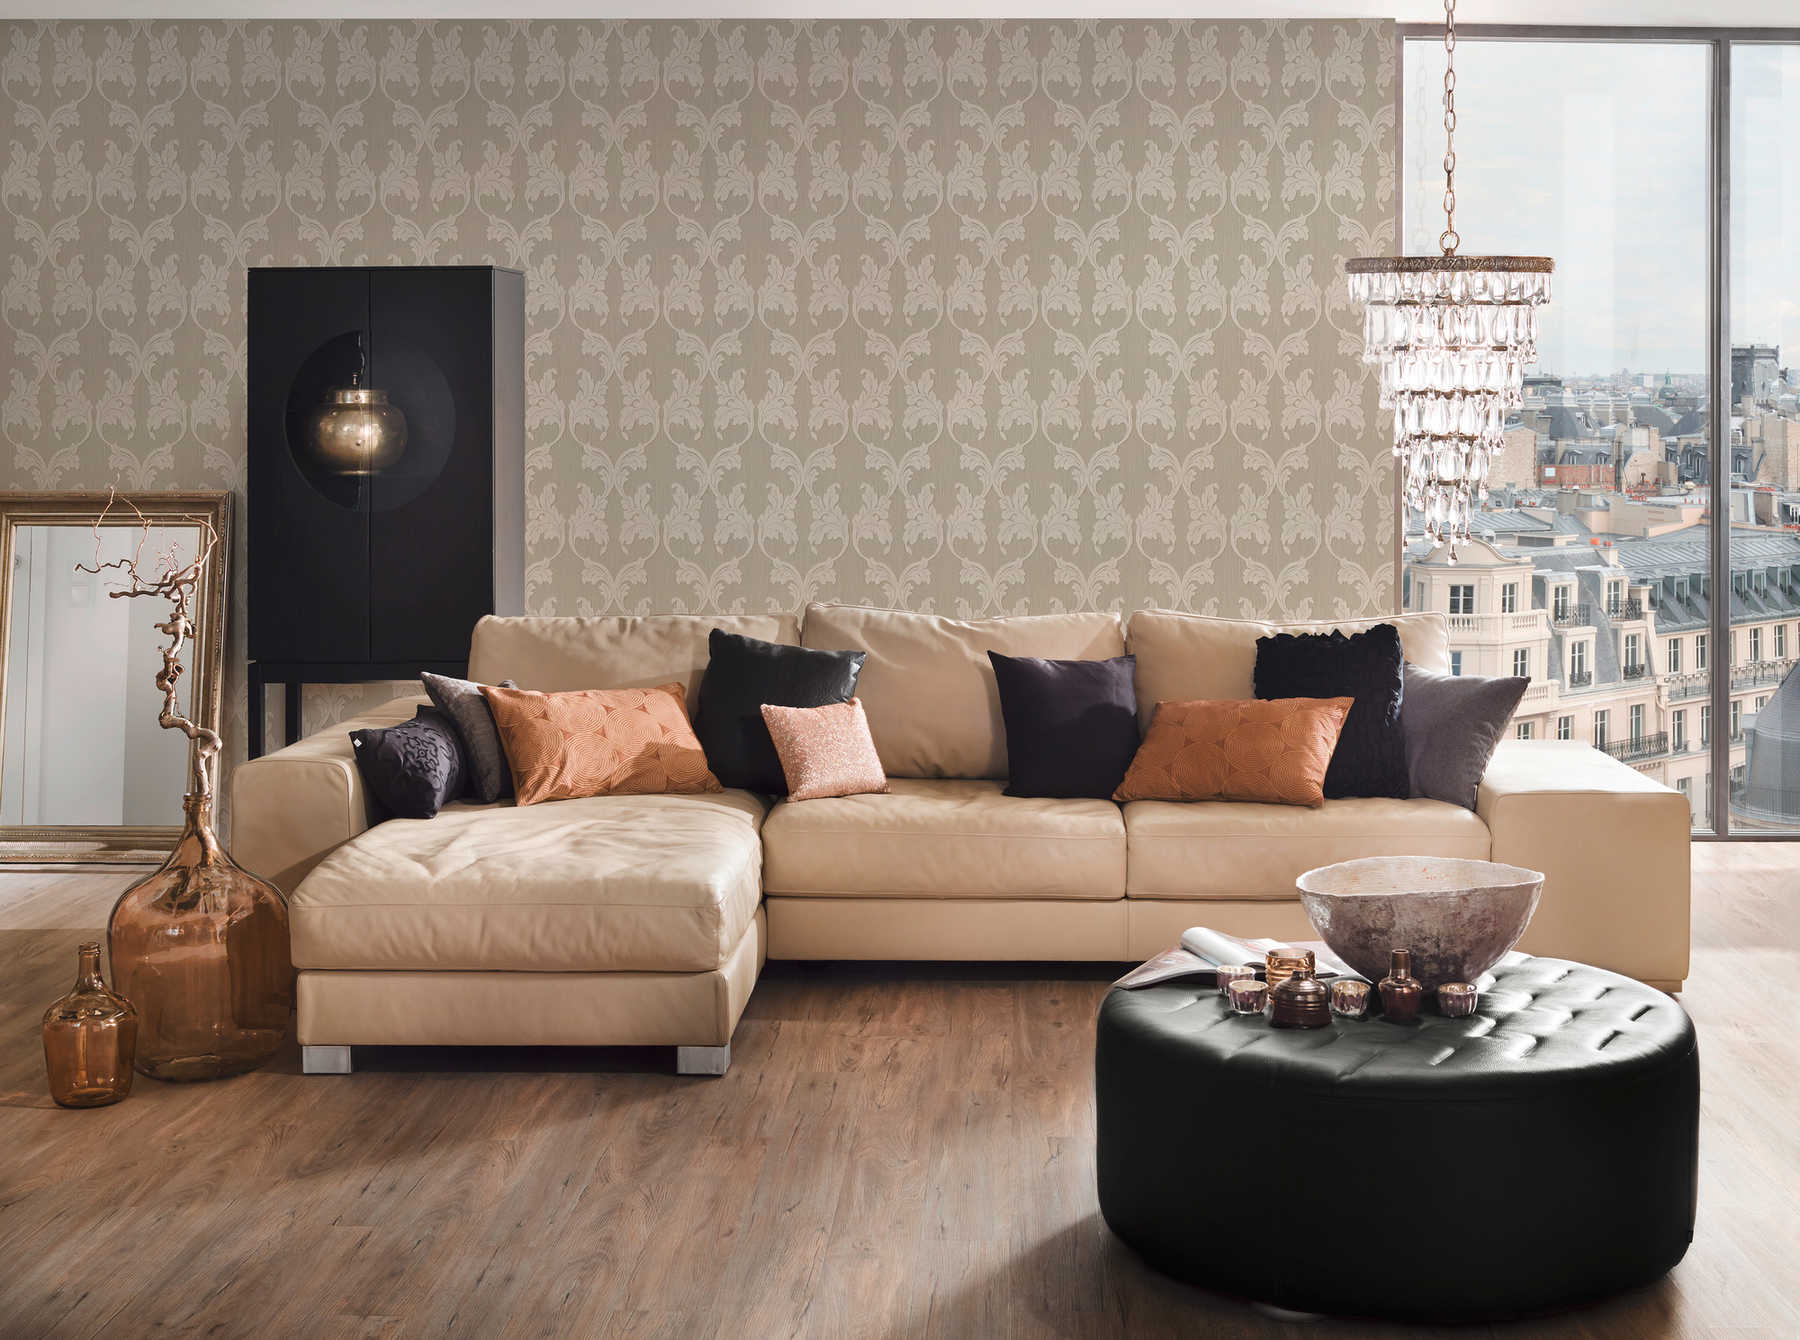             Premium textile wallpaper with ornament vines - beige, cream
        